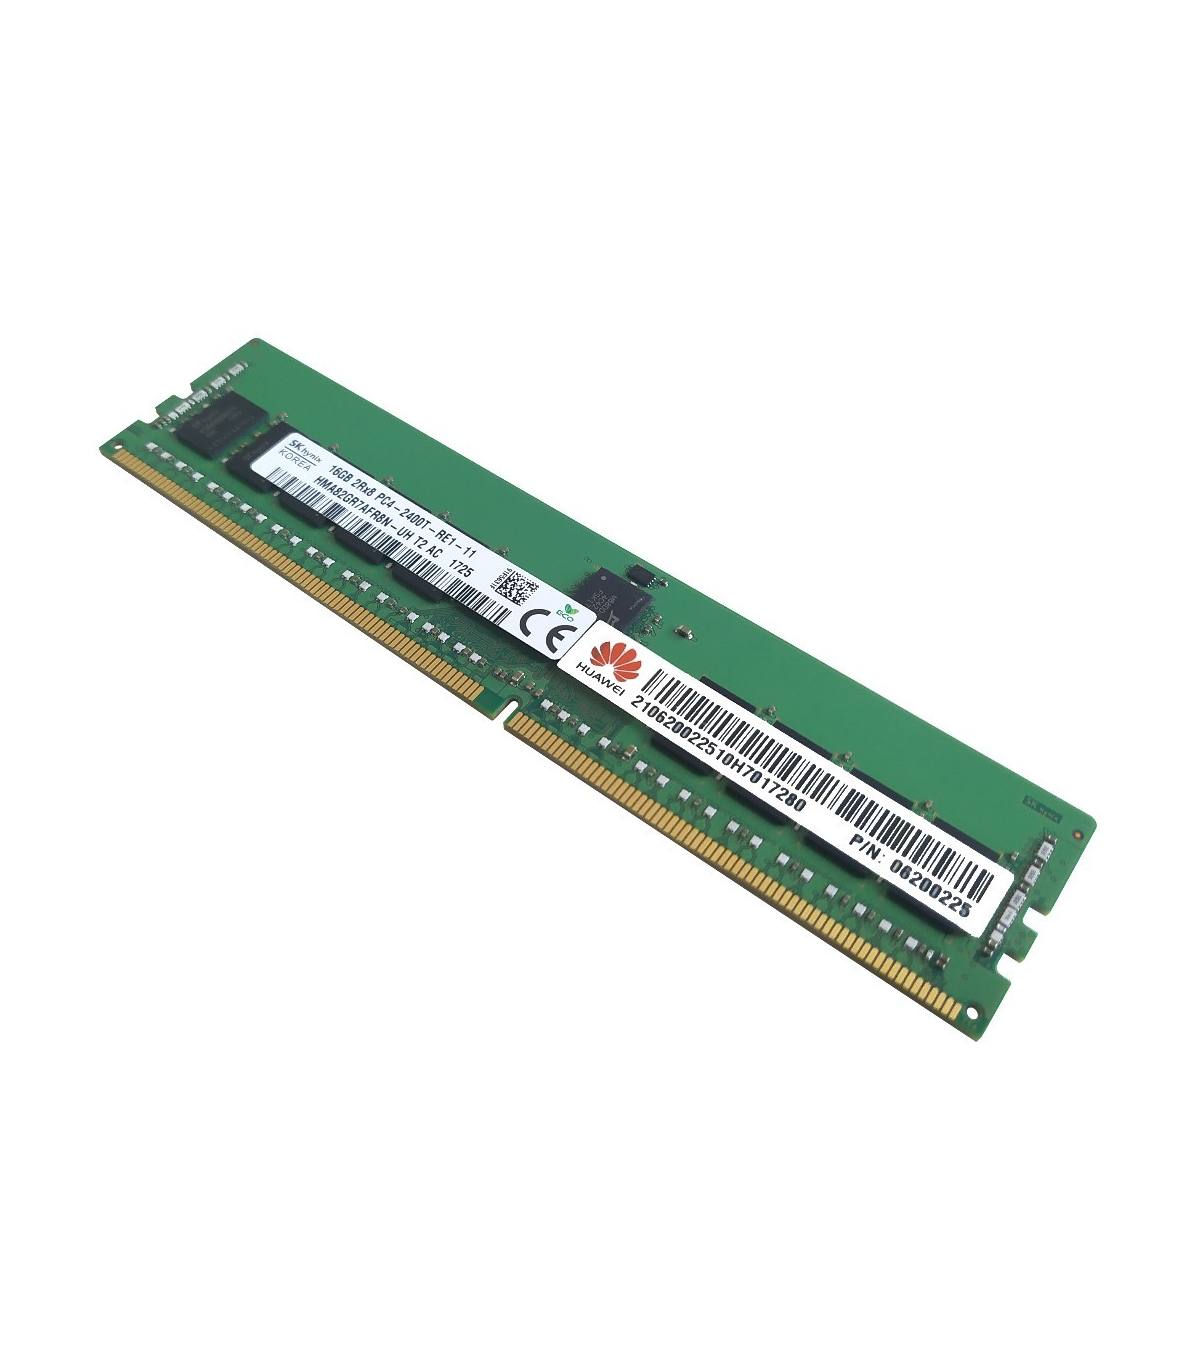 RAM SK HYNIX/HUAWEI 16GB 2Rx8 PC4 2400T 06200225 HMA82GR7AFR8N-UH T2 AC 1725